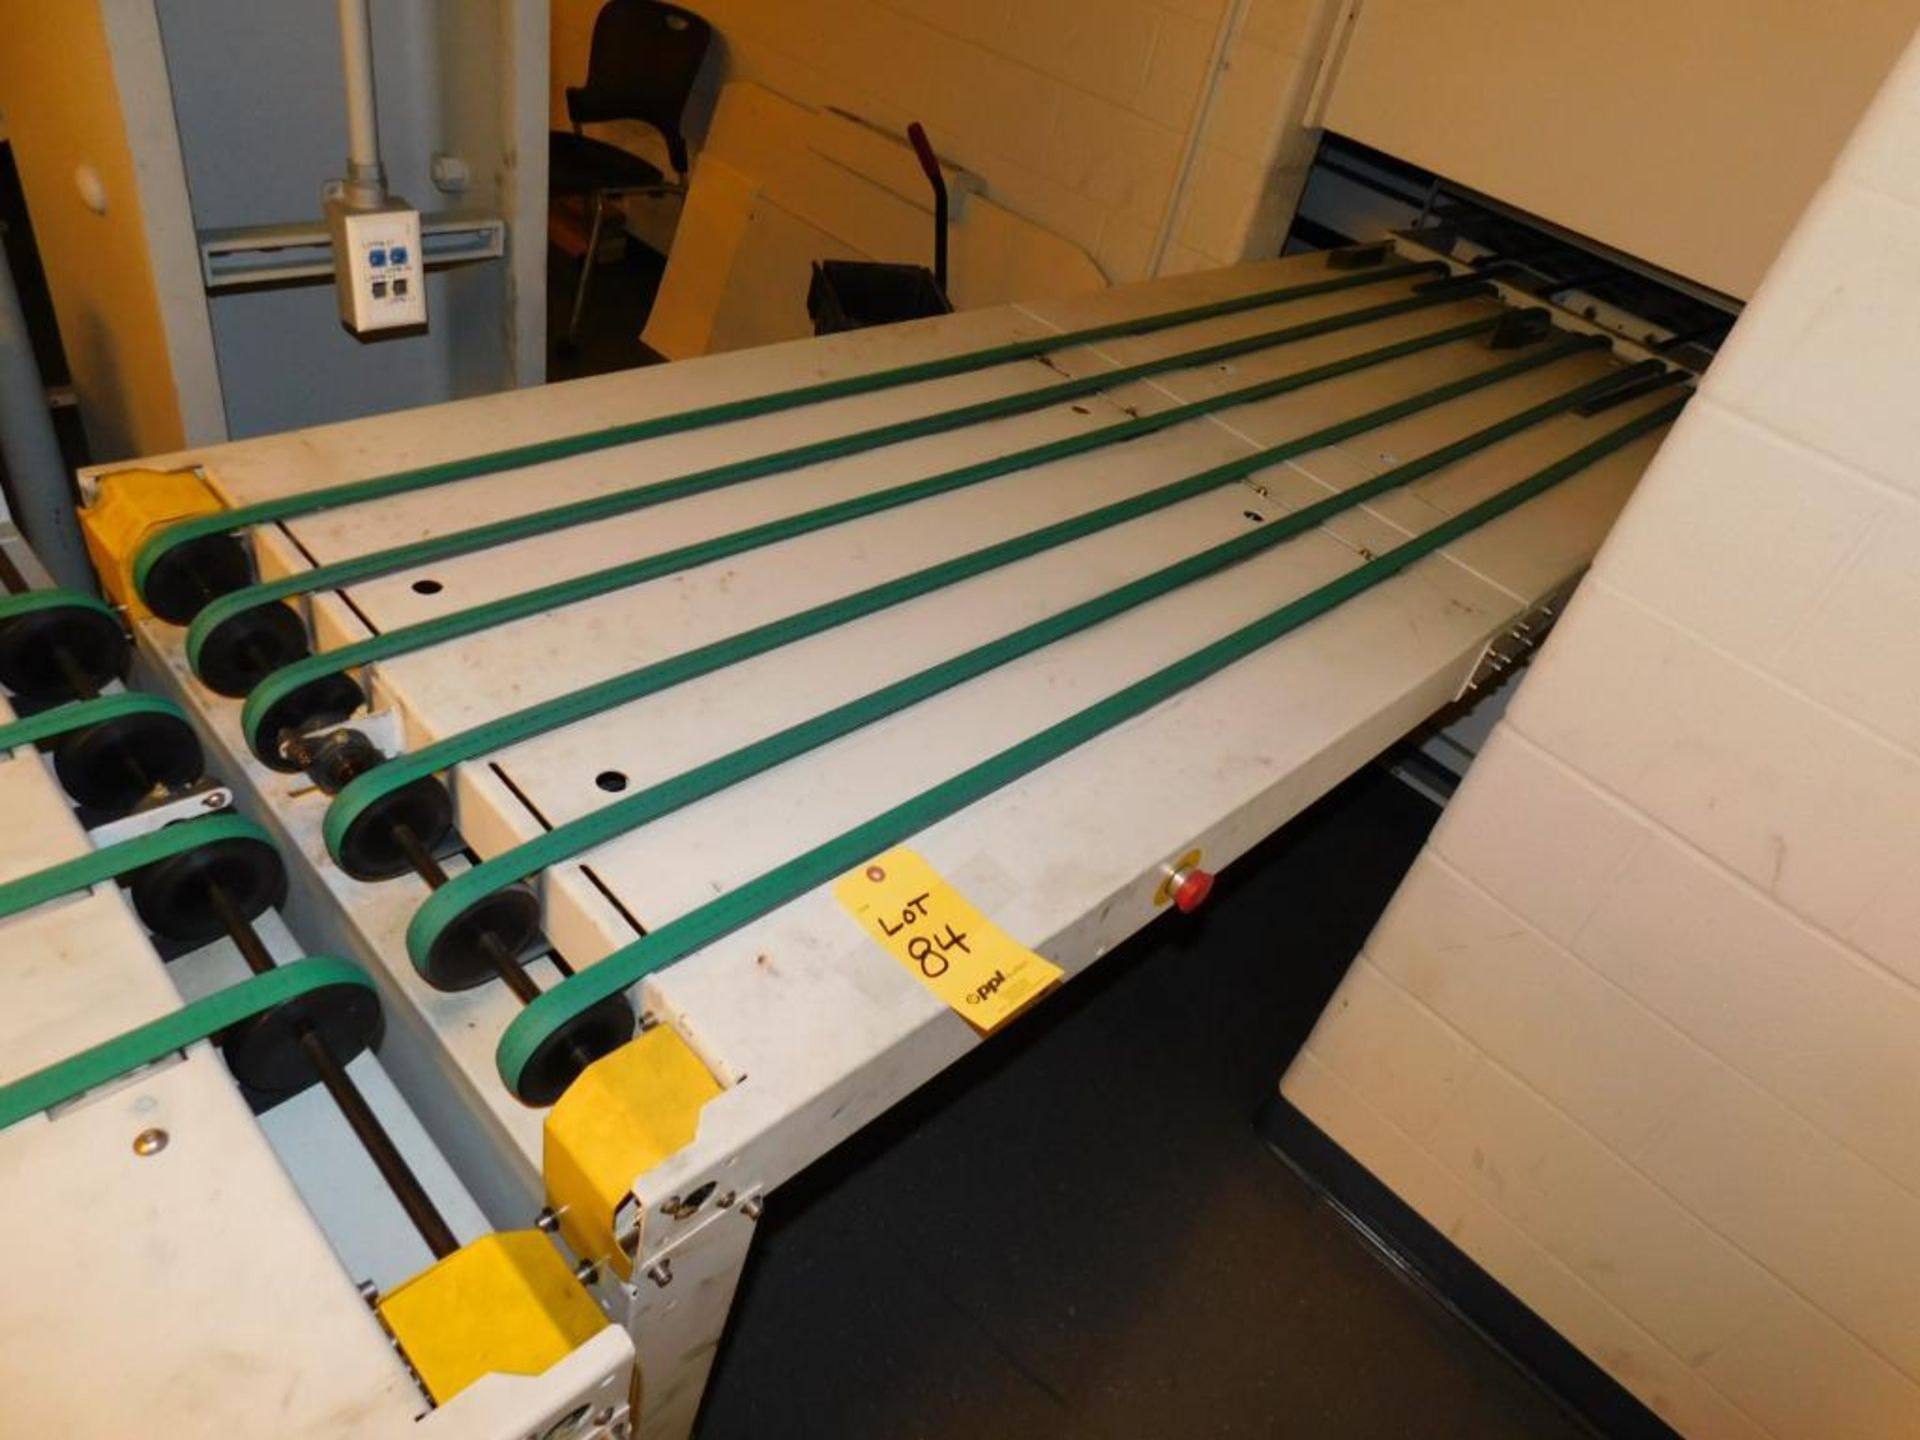 LOT: (1) K & F Model CD GR-050 Conveyor Table, S/N 0512, (1) K & F UTM GR-139 Conveyor Table, S/N 05 - Image 6 of 10